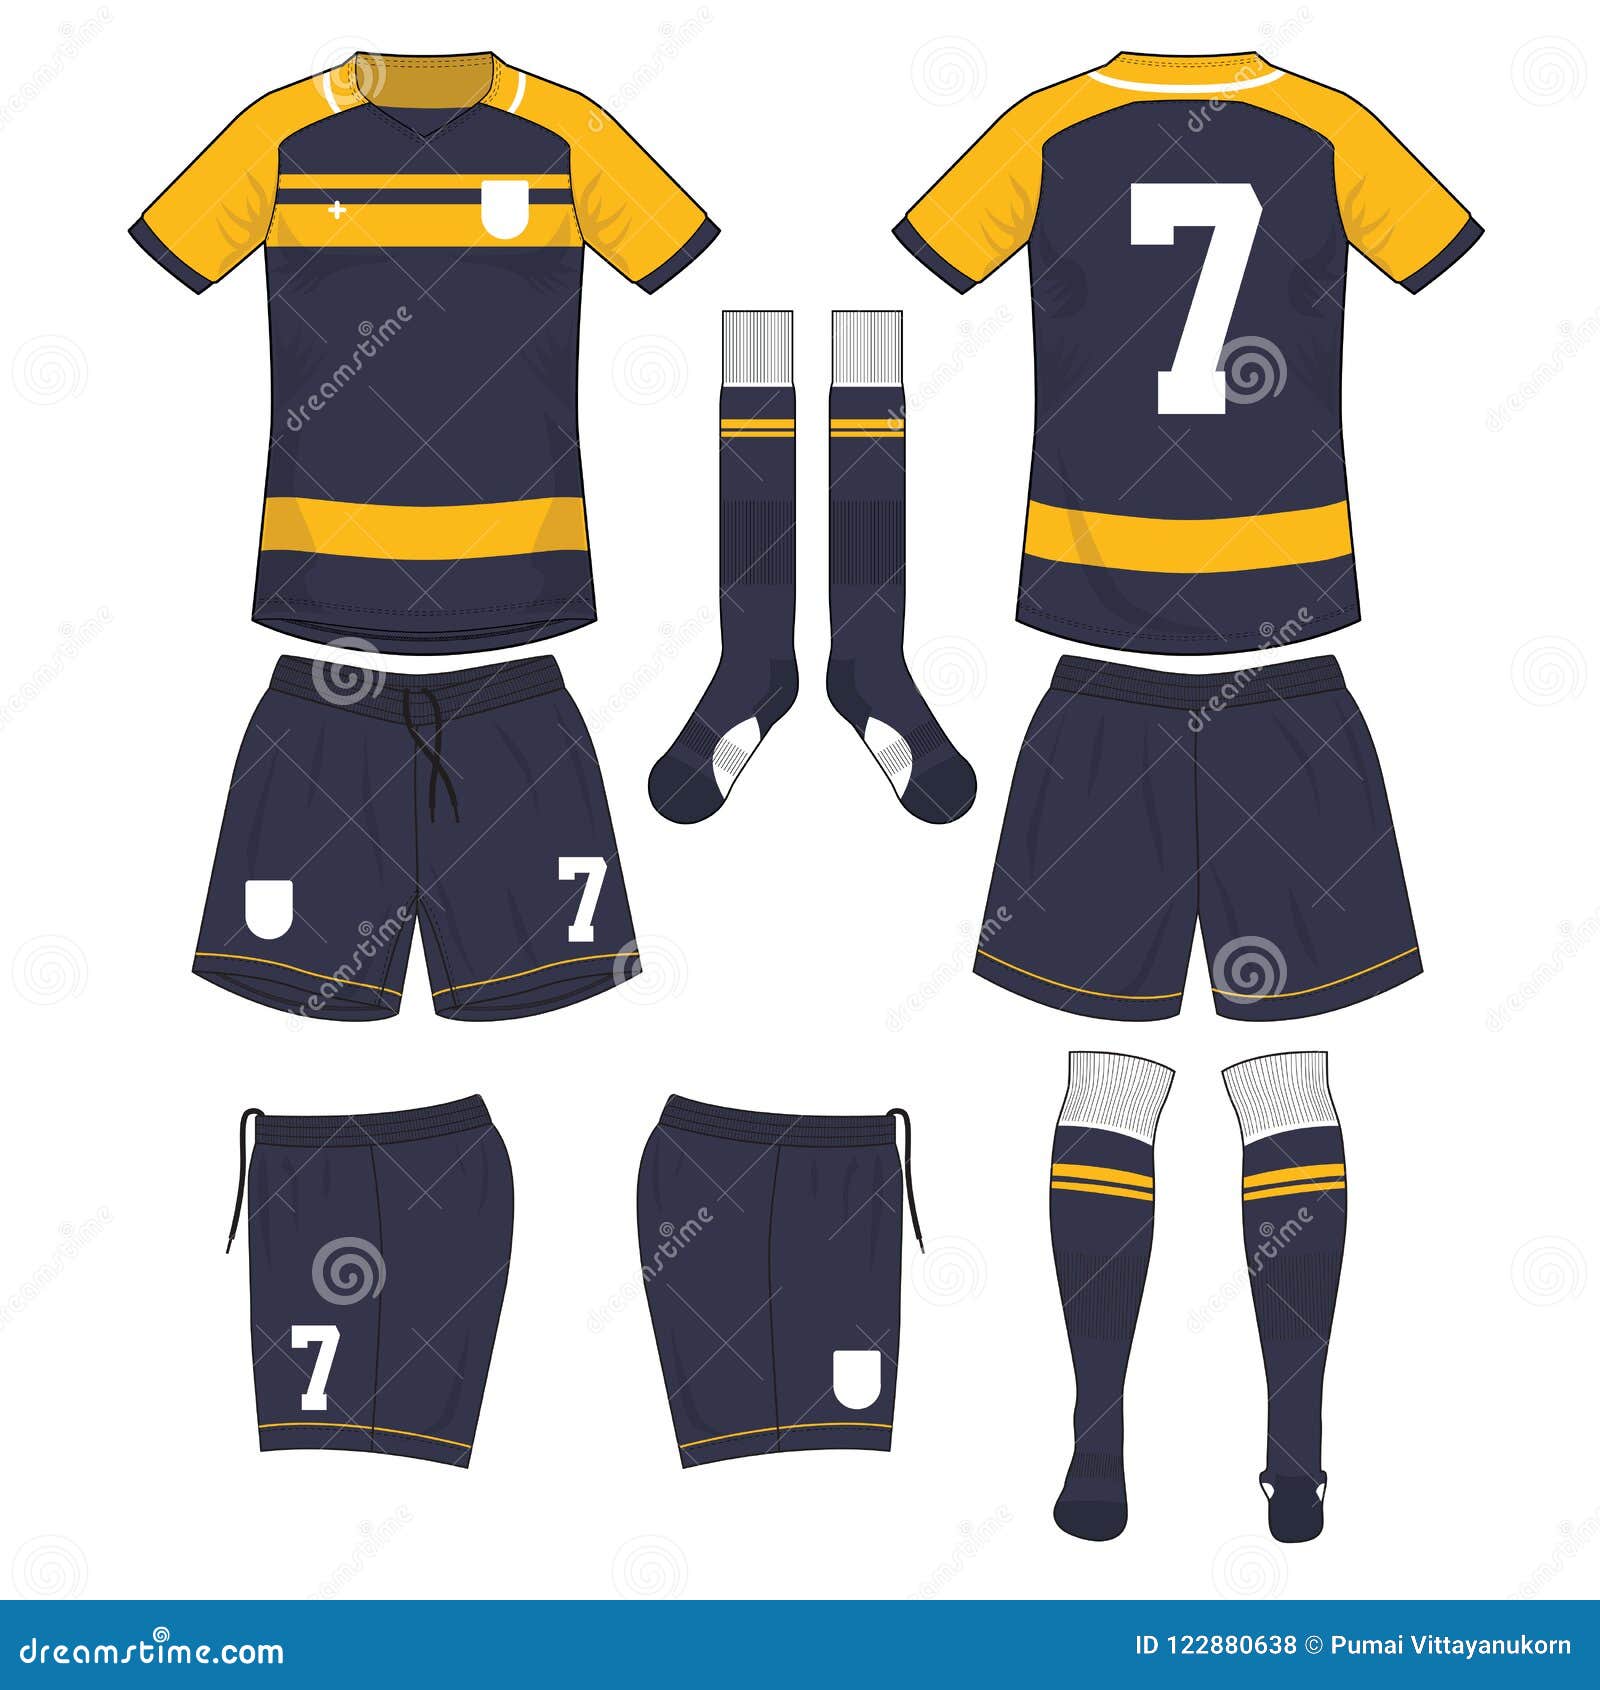 sky blue/white/black * Football Kit *16 PEICE KIT Size 40-42 M/L MENS  